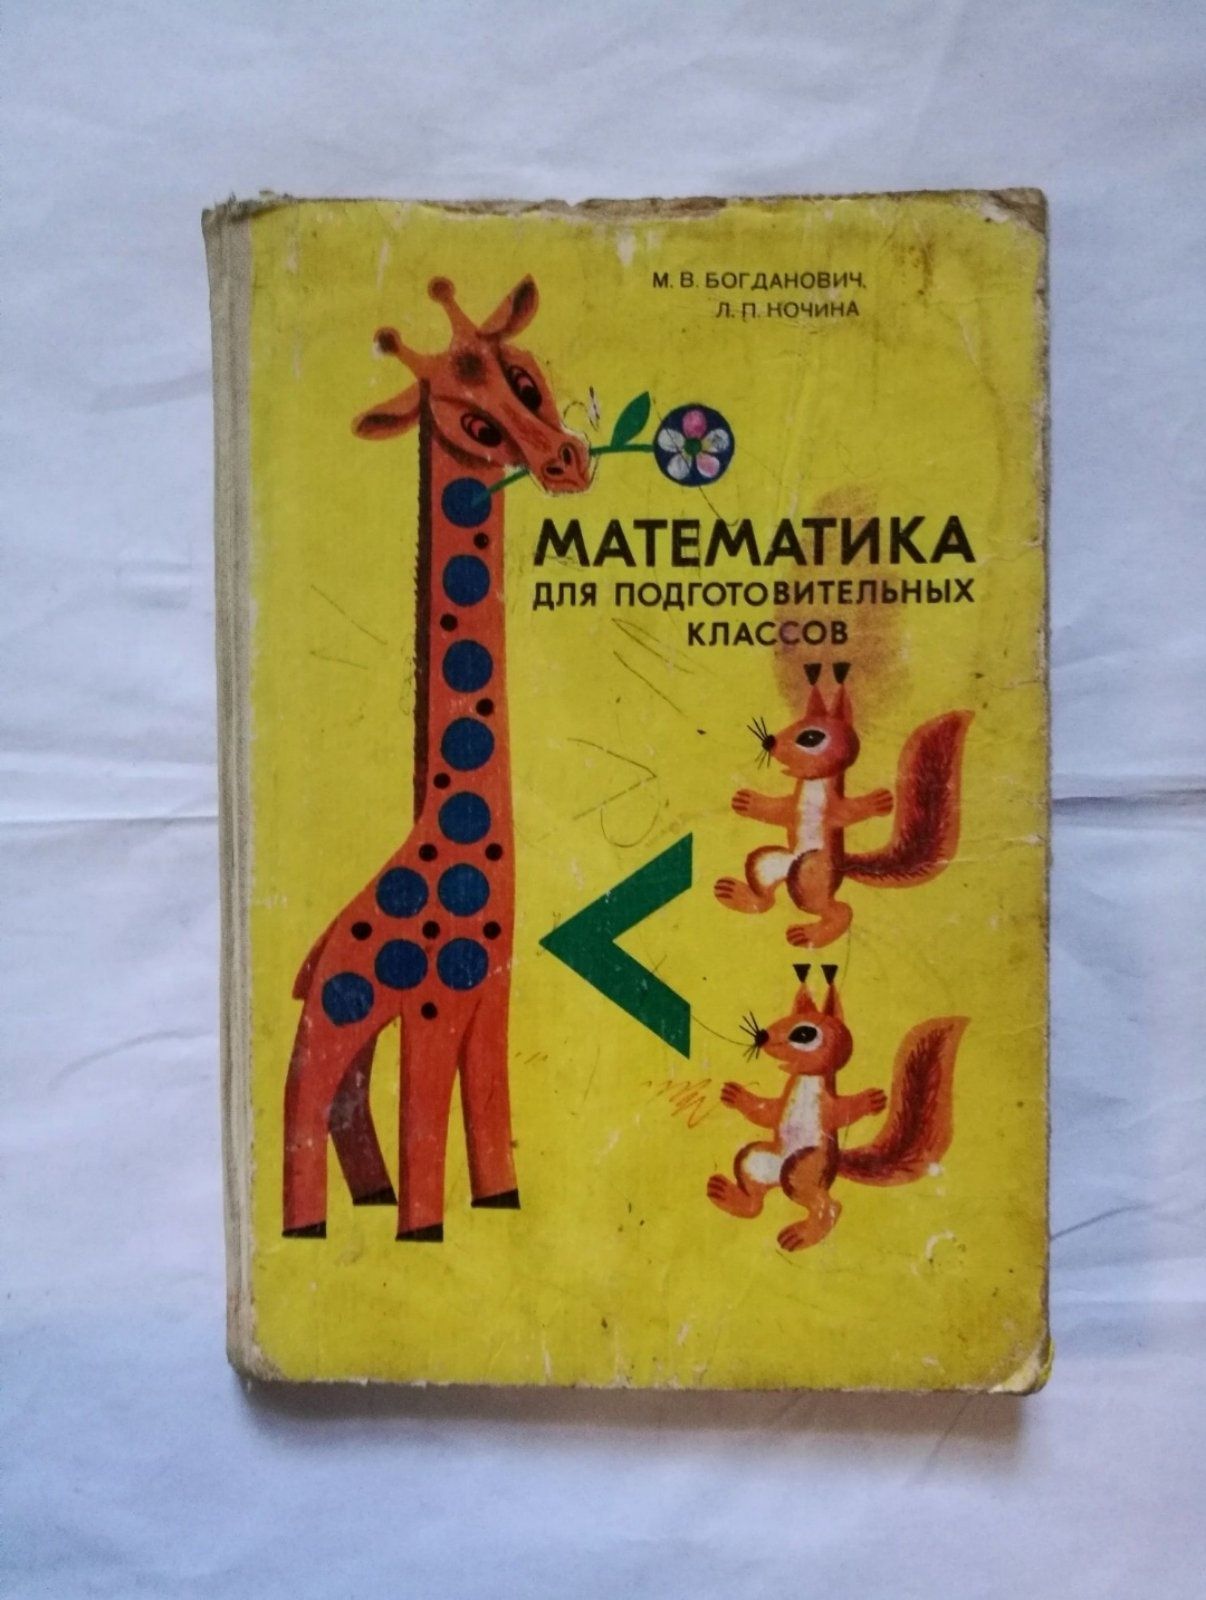 Богданович, Кочина "Математика для подготовительных классов", 1984